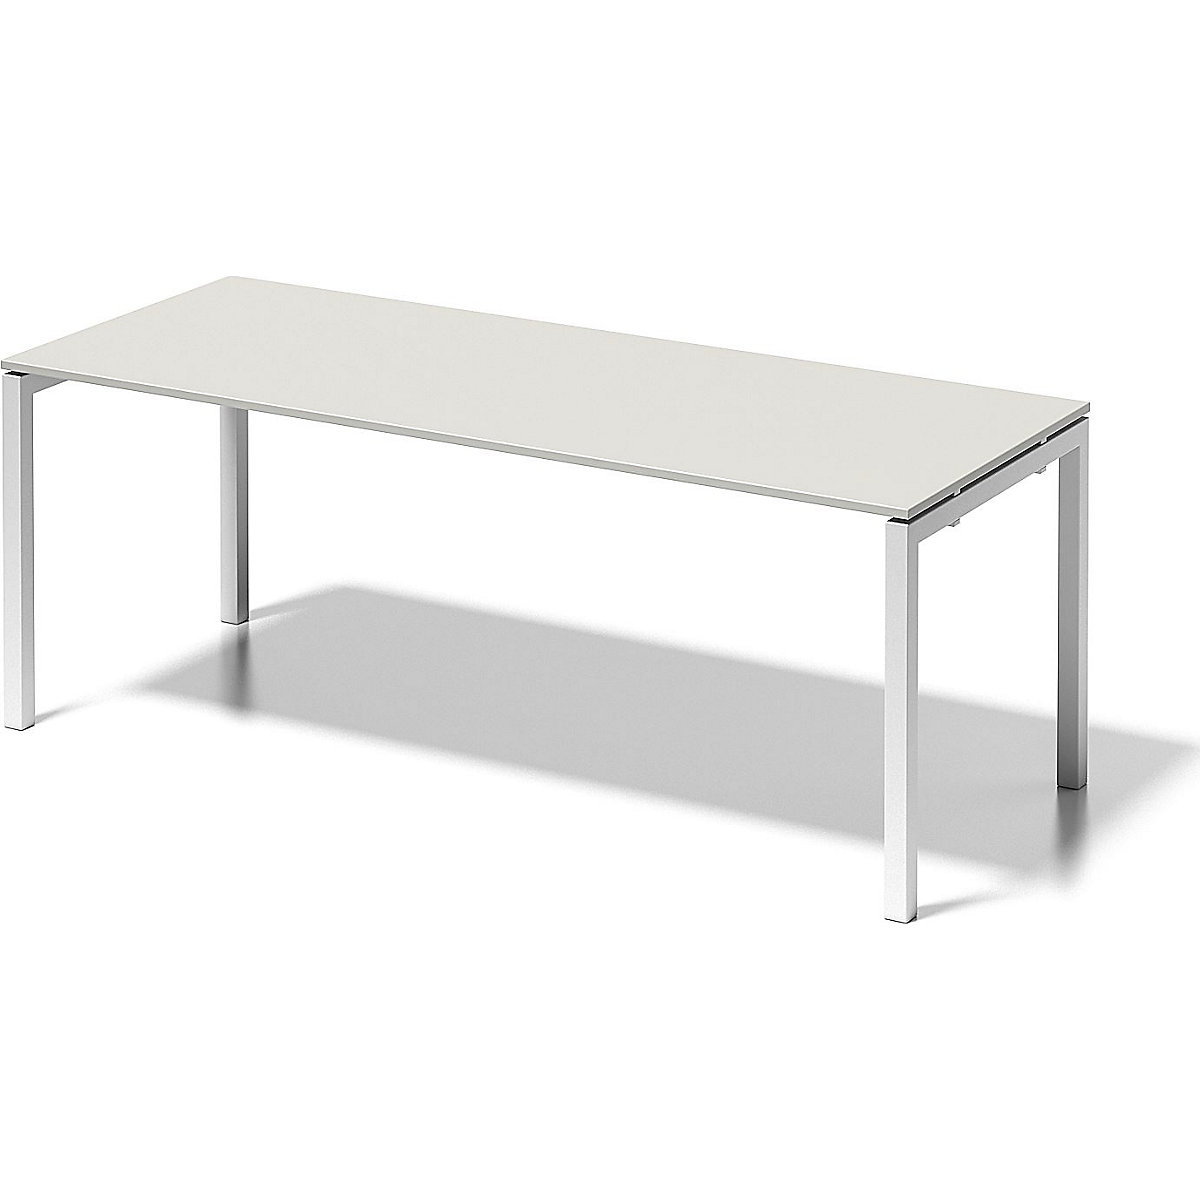 Písací stôl CITO, podstavec v tvare U – BISLEY, v x š x h 740 x 2000 x 800 mm, podstavec biela, doska stola šedobiela-7